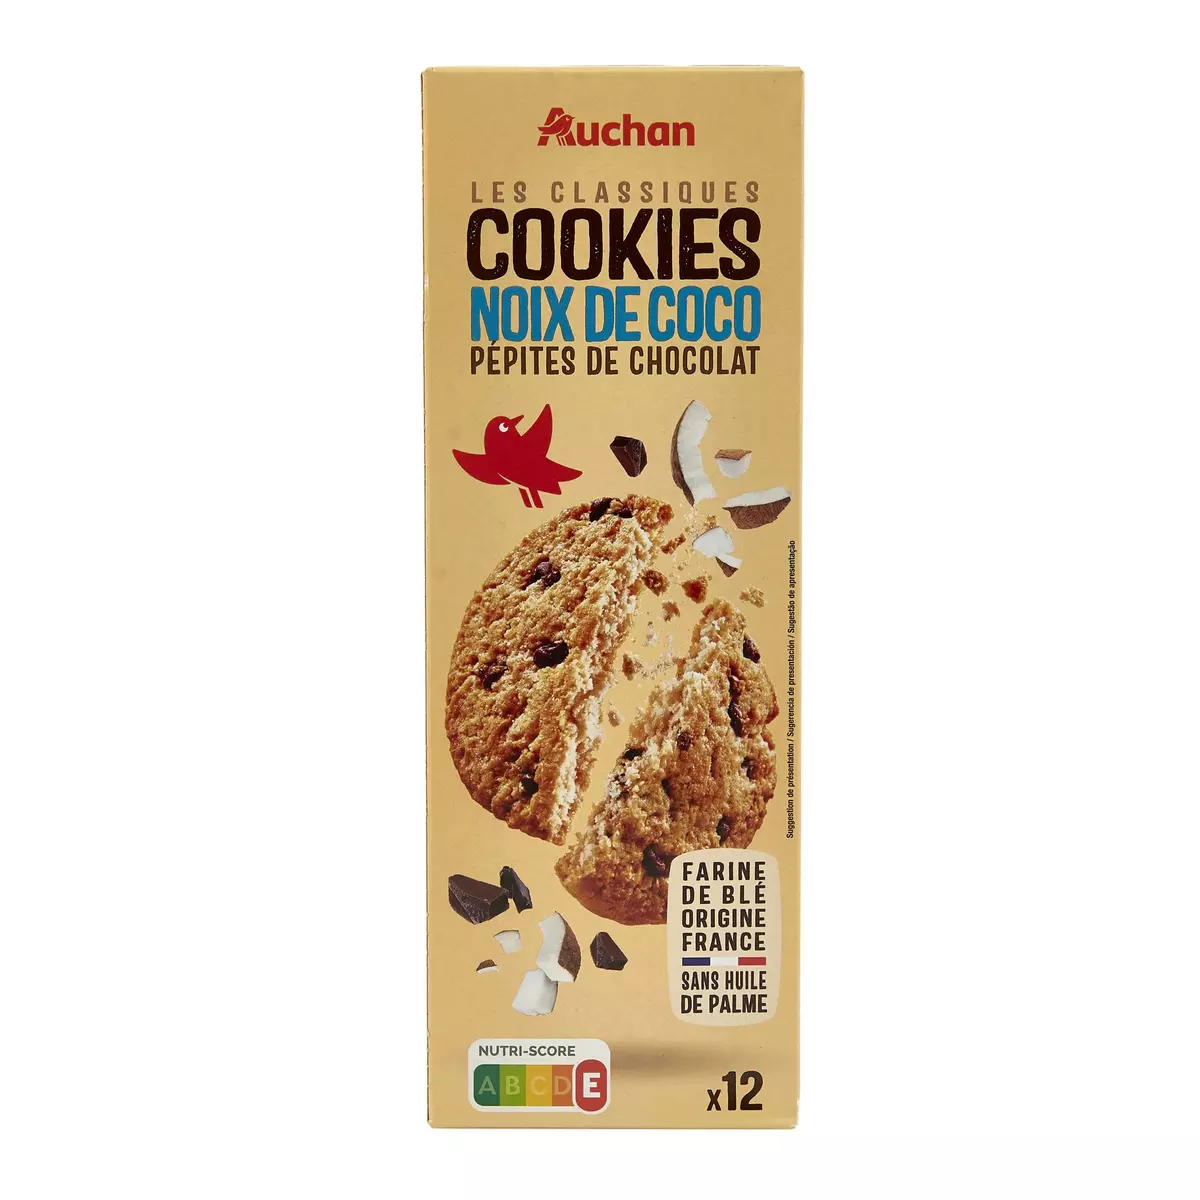 AUCHAN Cookies pépites de chocolat et noix de coco 12 cookies 200g